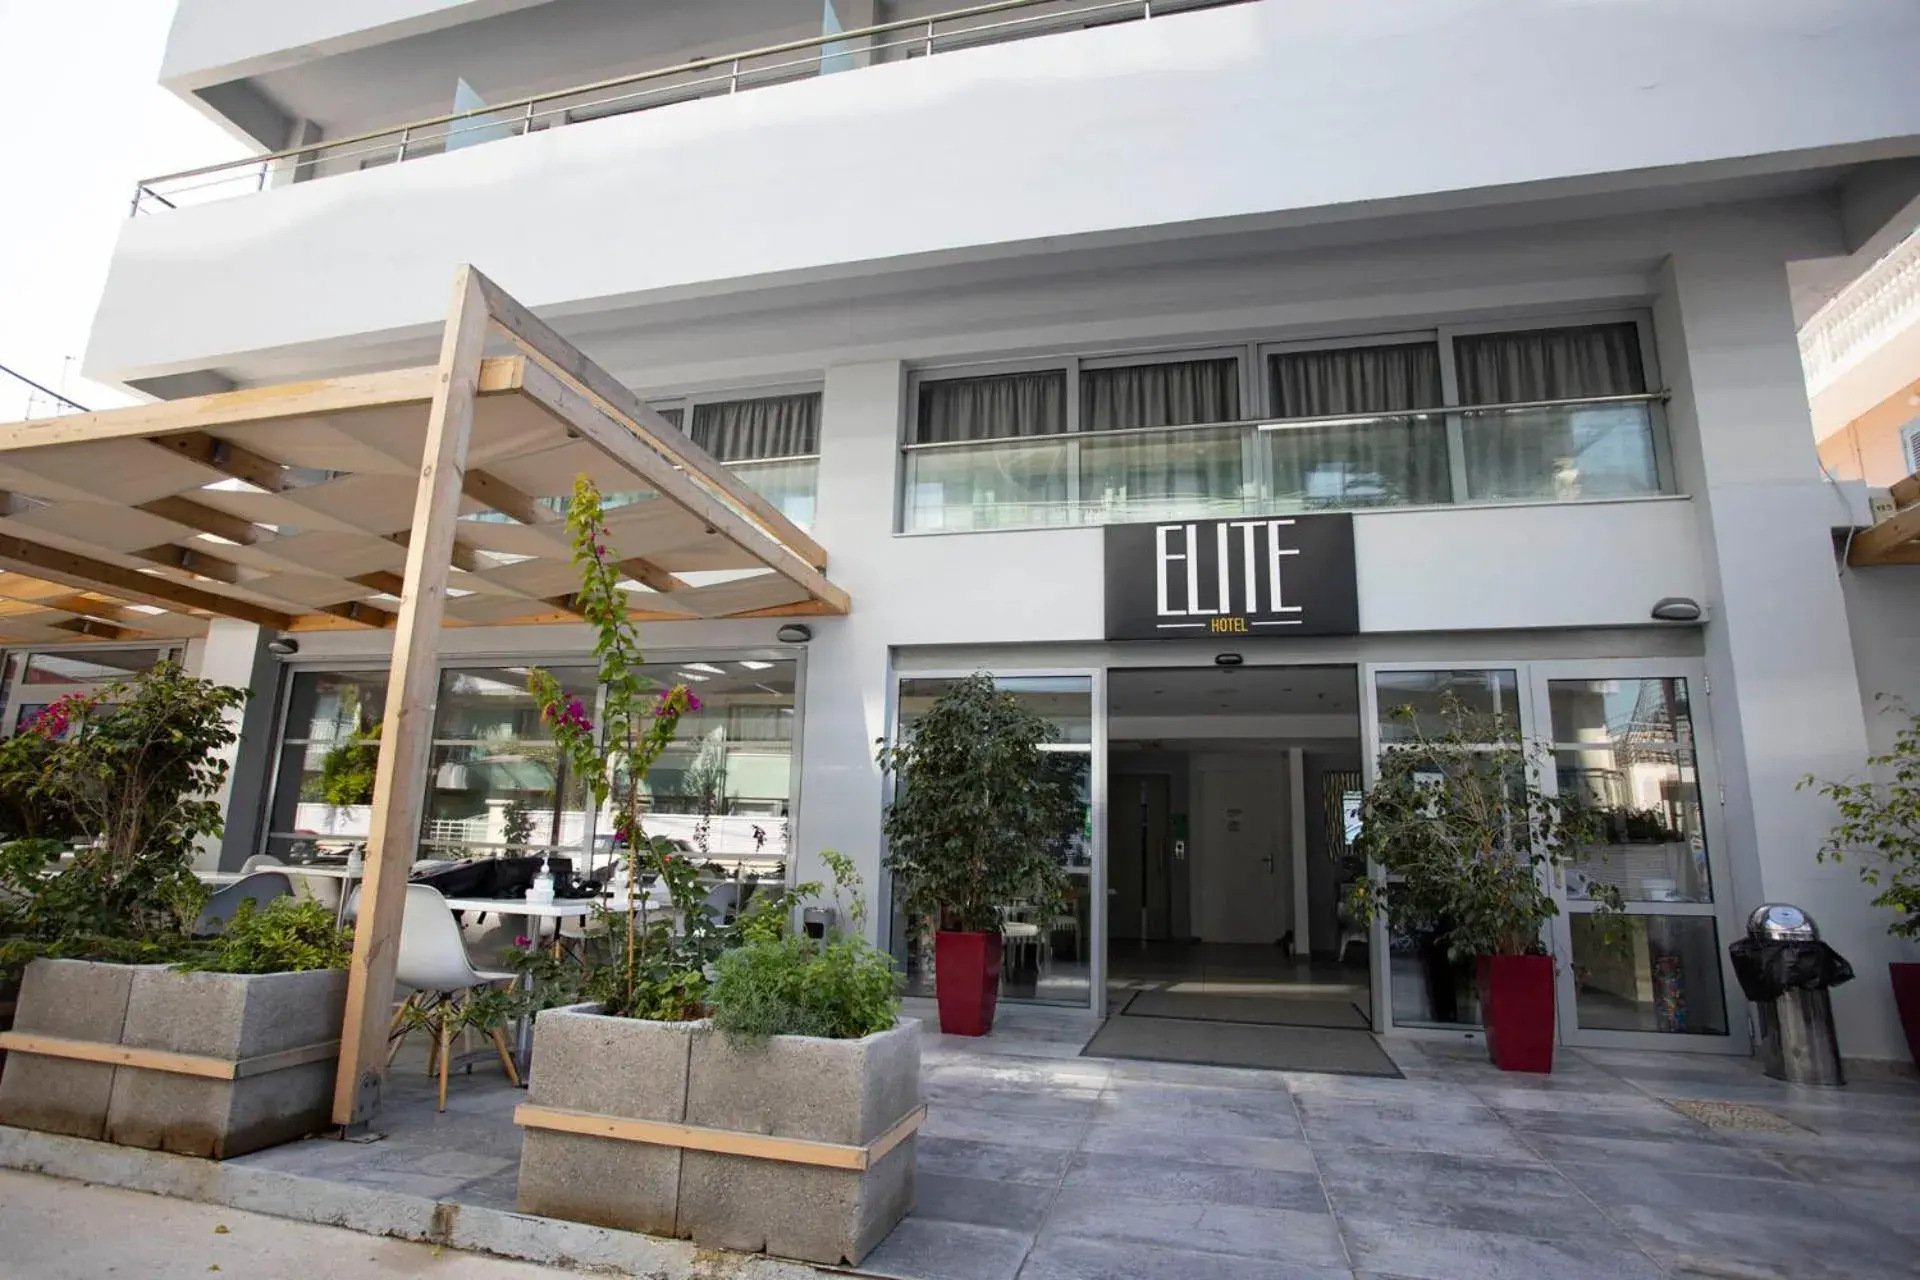 Facade/entrance, Property Building in Elite Hotel